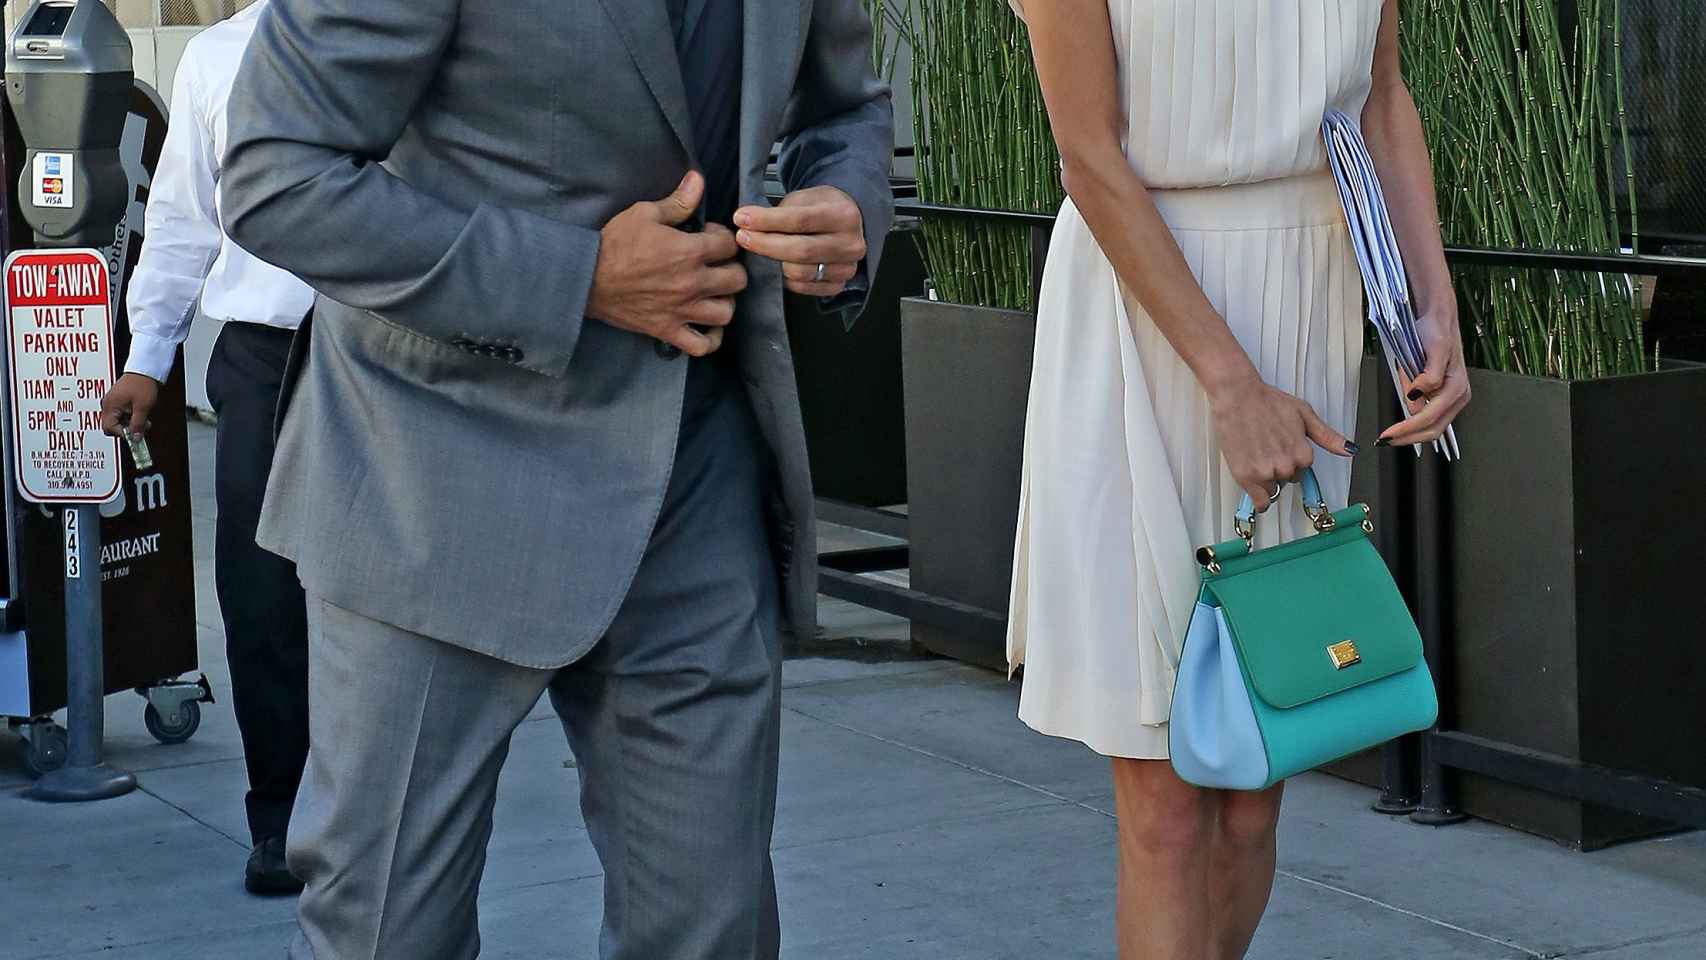 El matrimonio Clooney cazado por los paparazzi mientras pasean por Beverly Hills